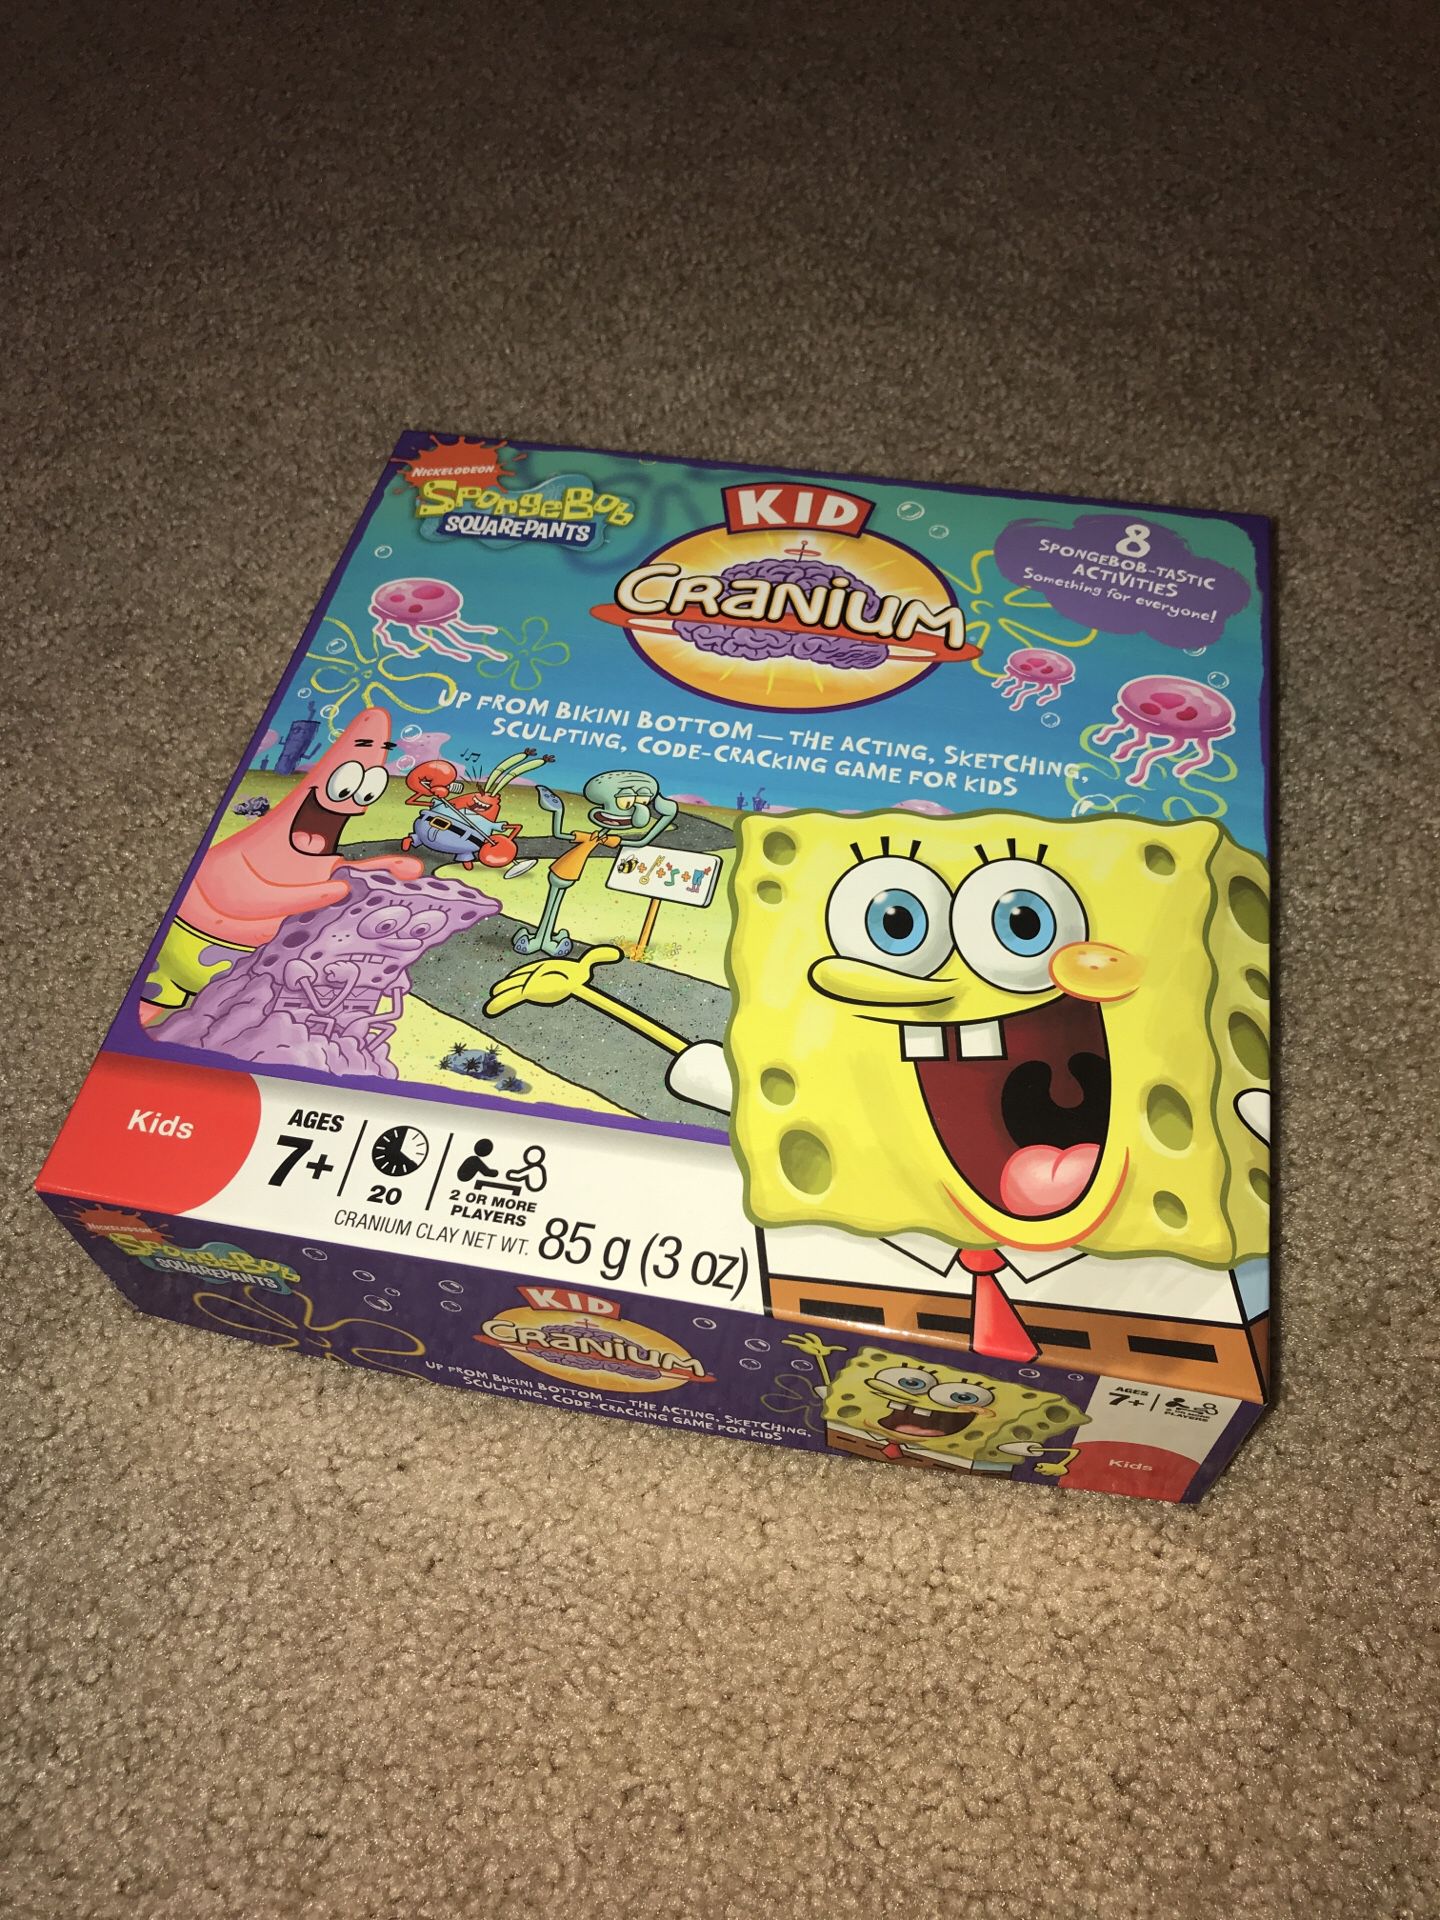 SpongeBob Squarepants Kid Cranium game